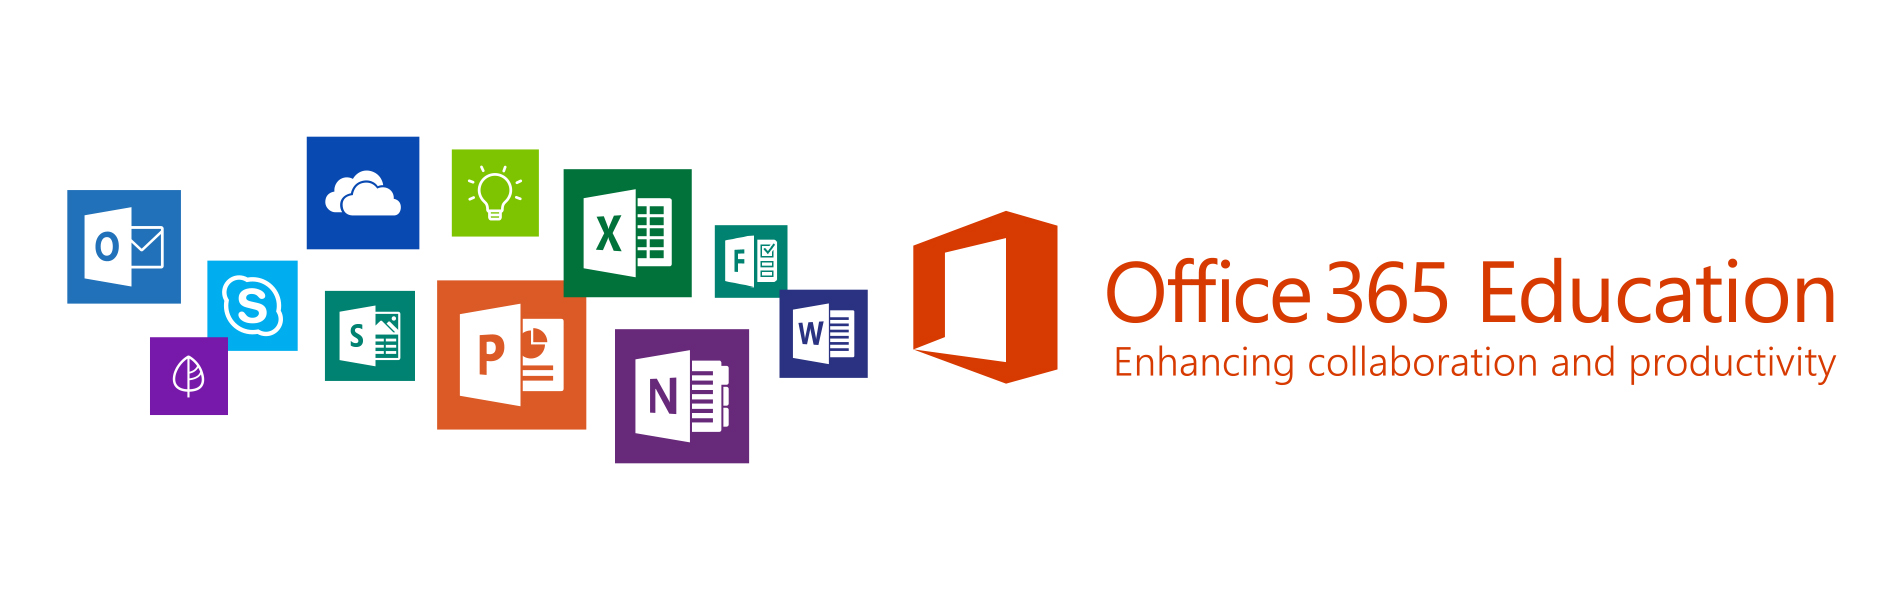 В Office 365 и другие продукты MS добавят режим голосового ввода-вывода для дислексиков - 1